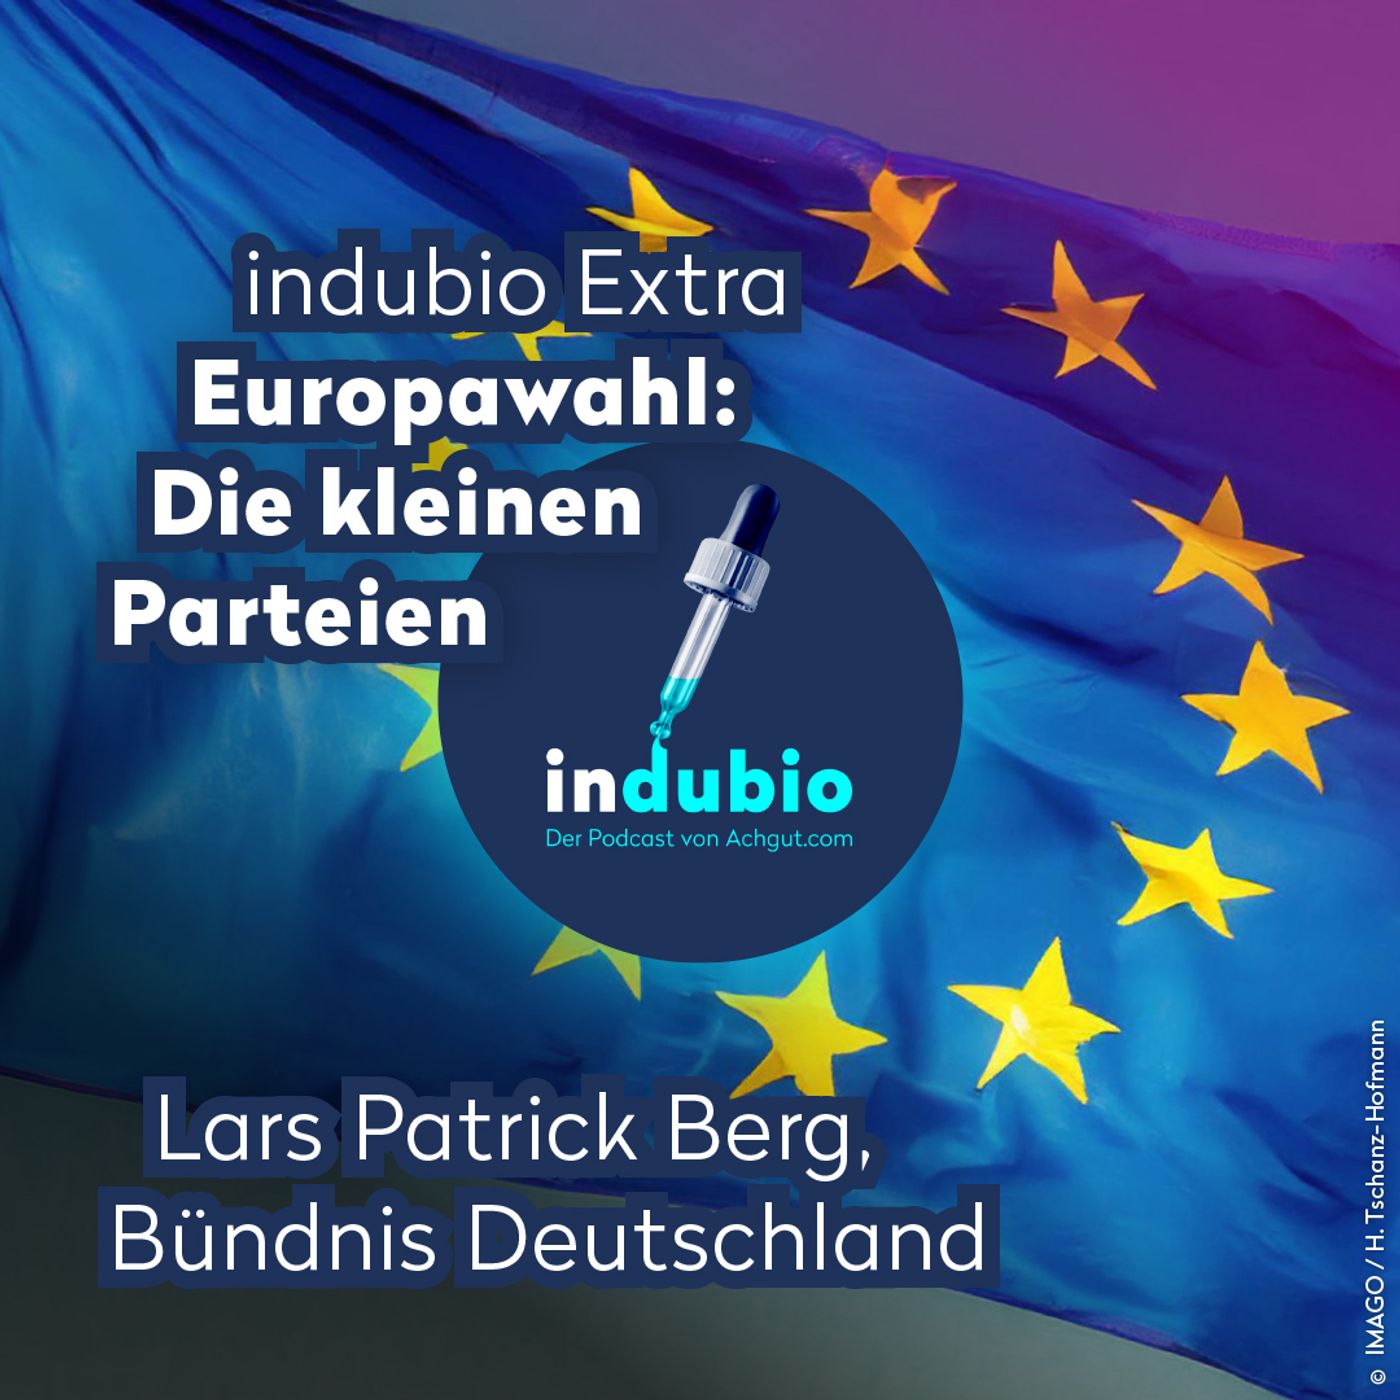 Indubio Extra - Europawahl: Bündnis Deutschland